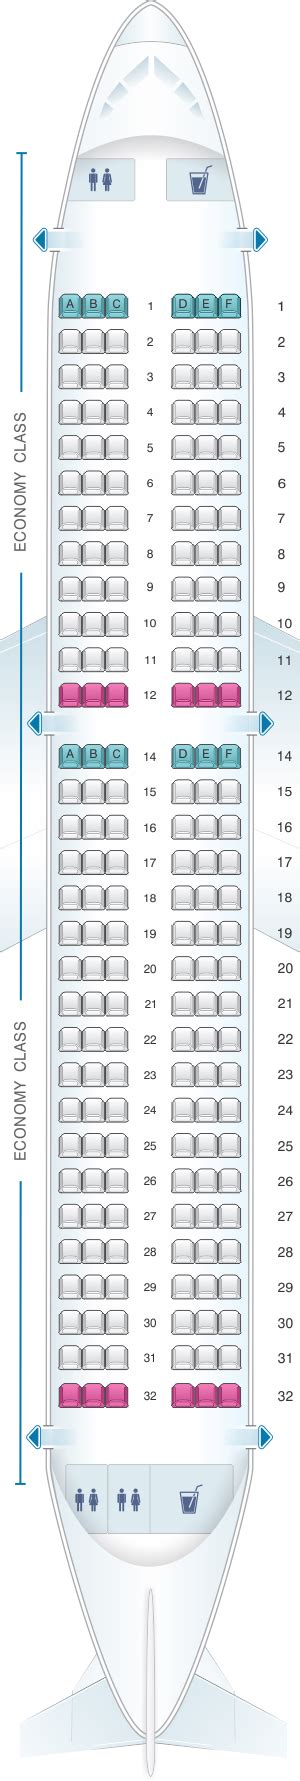 Seat Map Iberia Airbus A320 Neo Seatmaestro